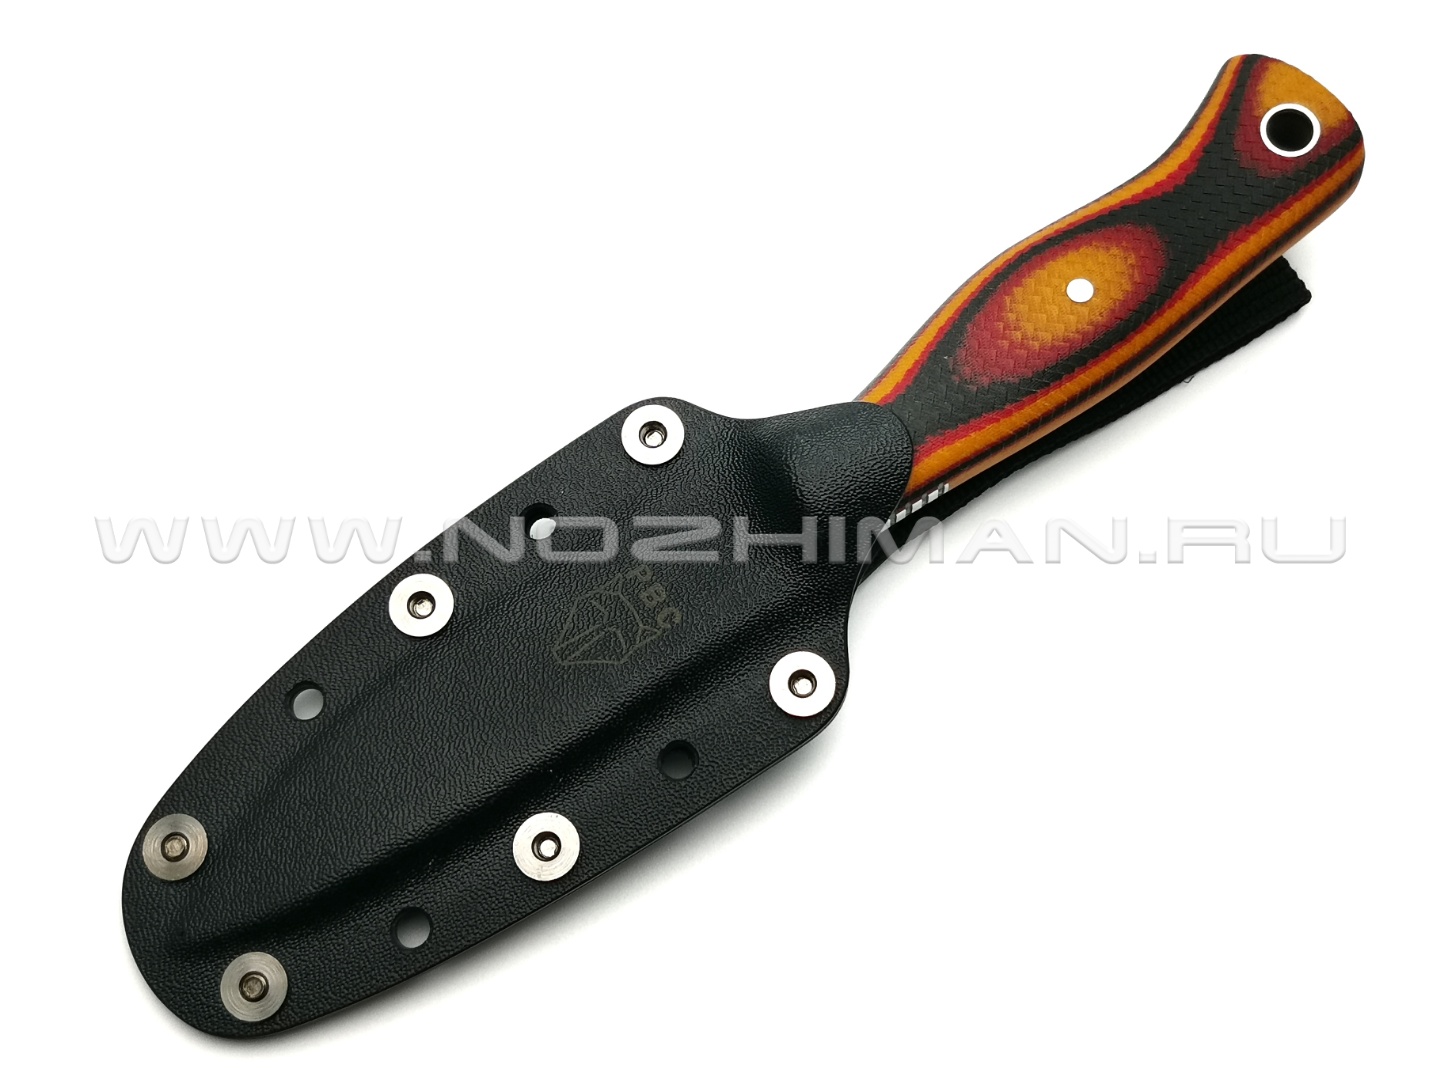 РВС нож "Гудкэт М" сталь N690, рукоять микарта black, red & orange